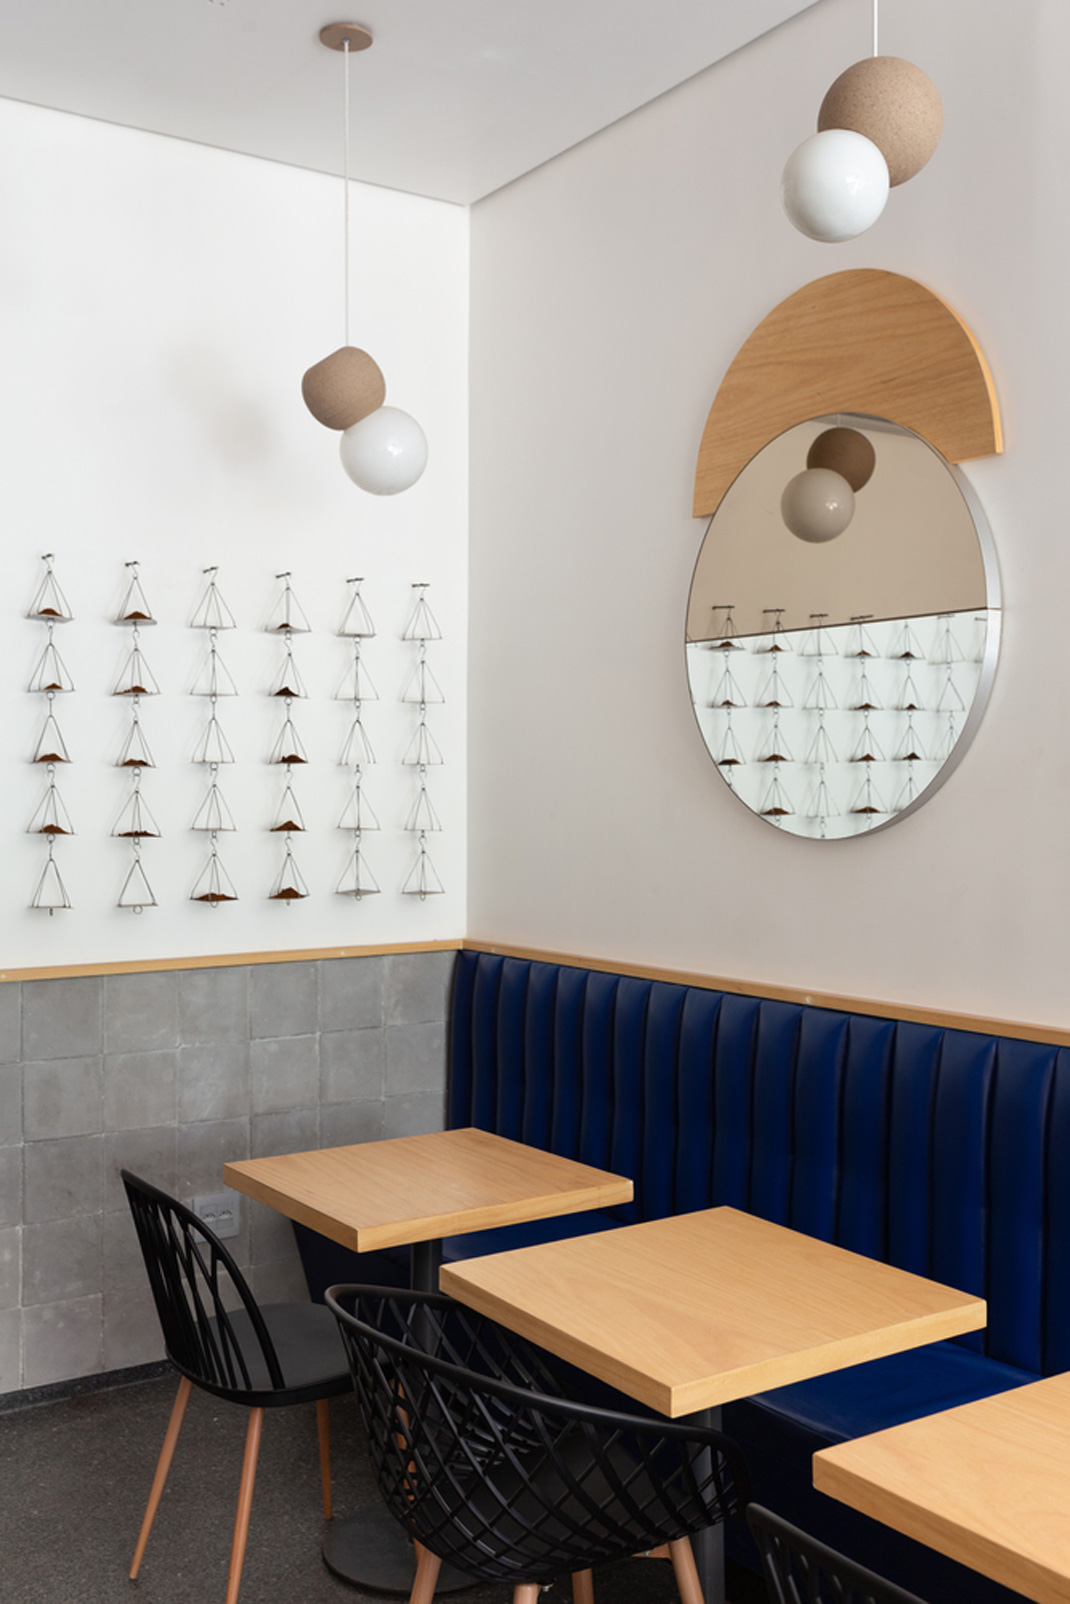 咖啡店tost cafe 巴西 咖啡店 木制结构 logo设计 vi设计 空间设计